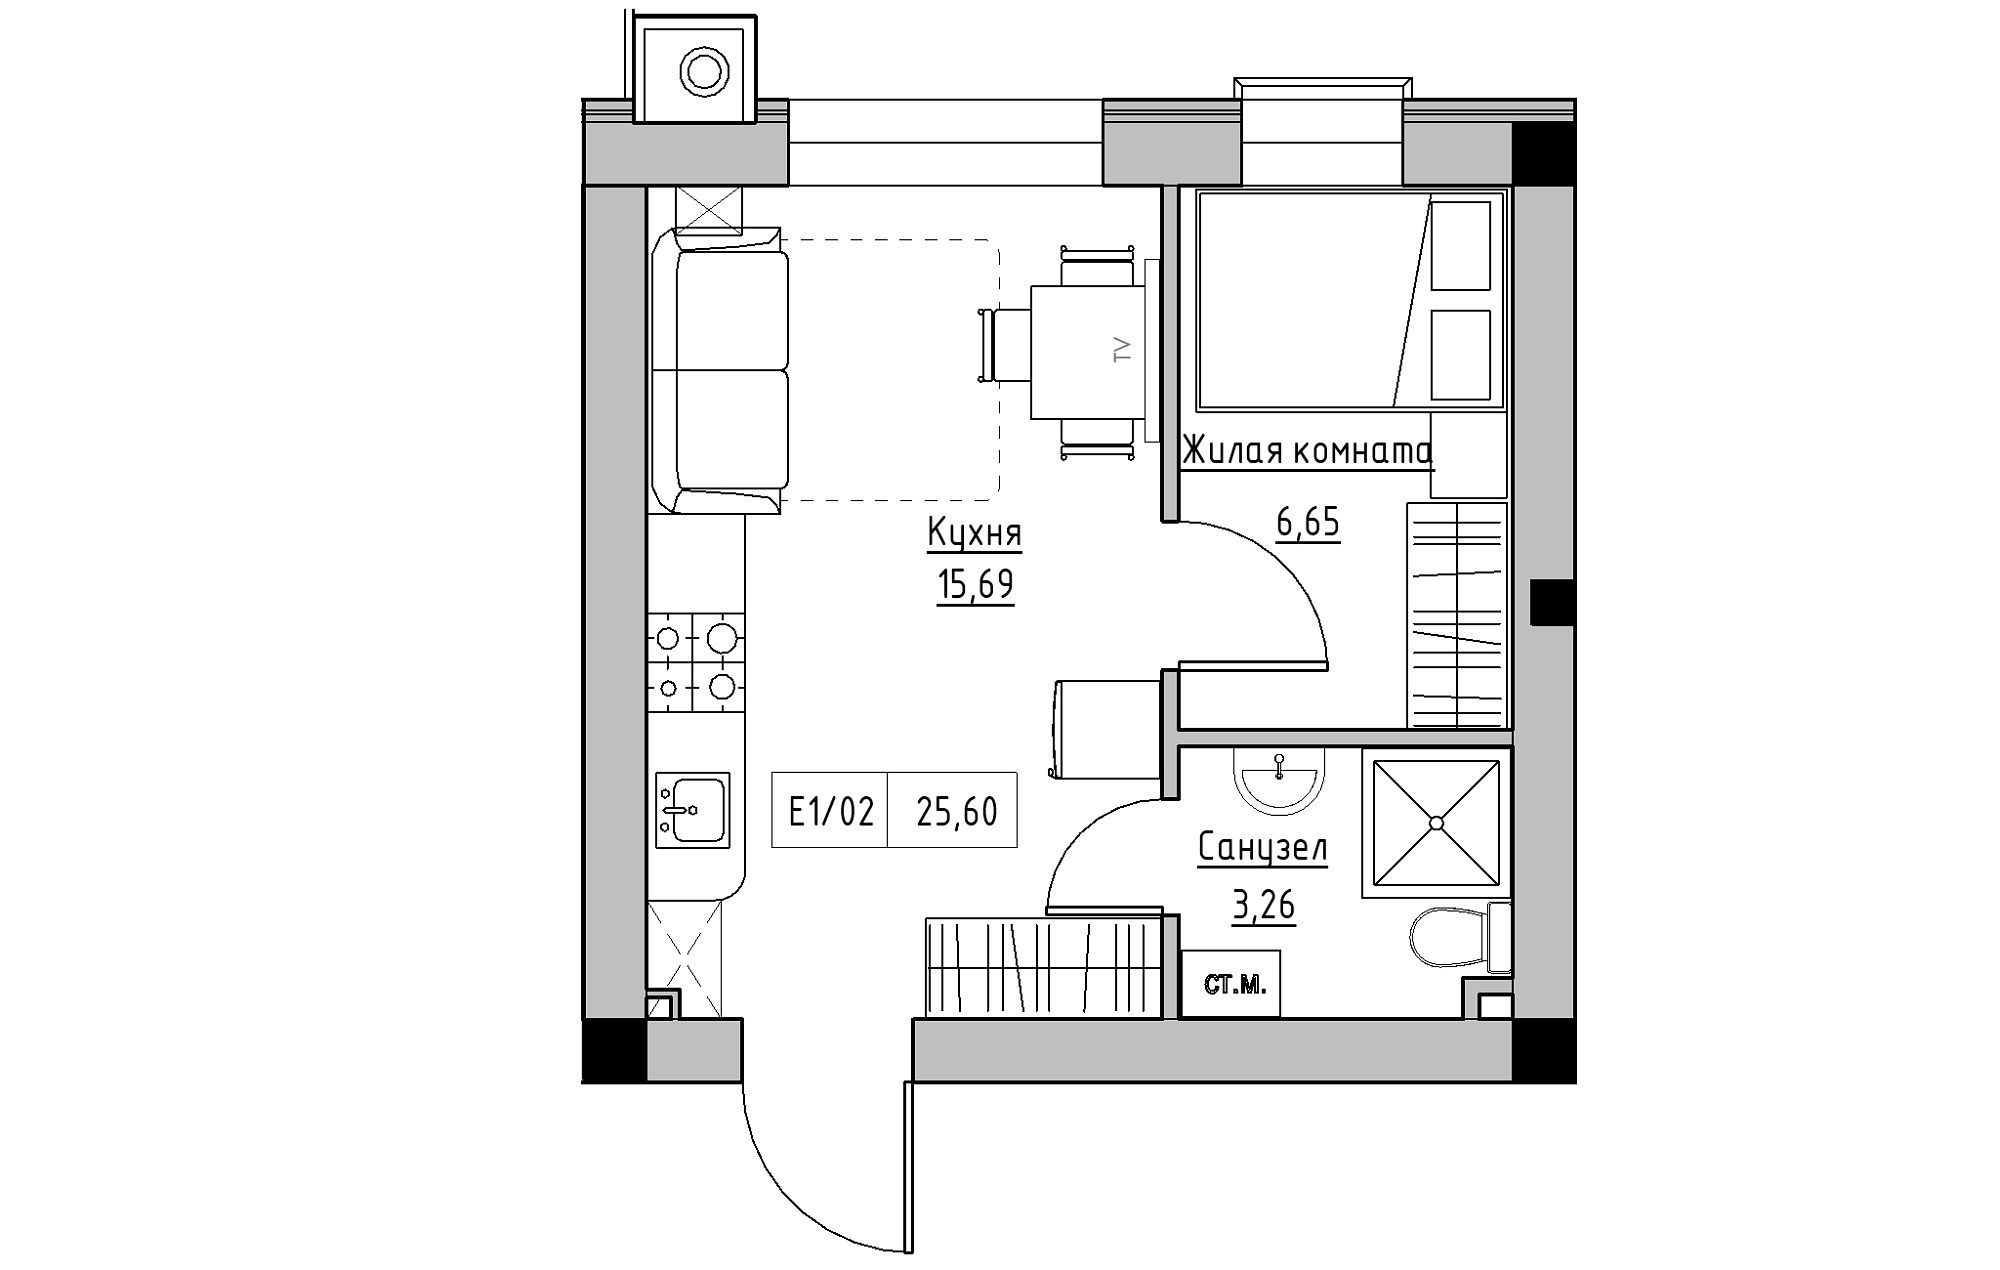 Планировка 1-к квартира площей 25.6м2, KS-013-05/0013.